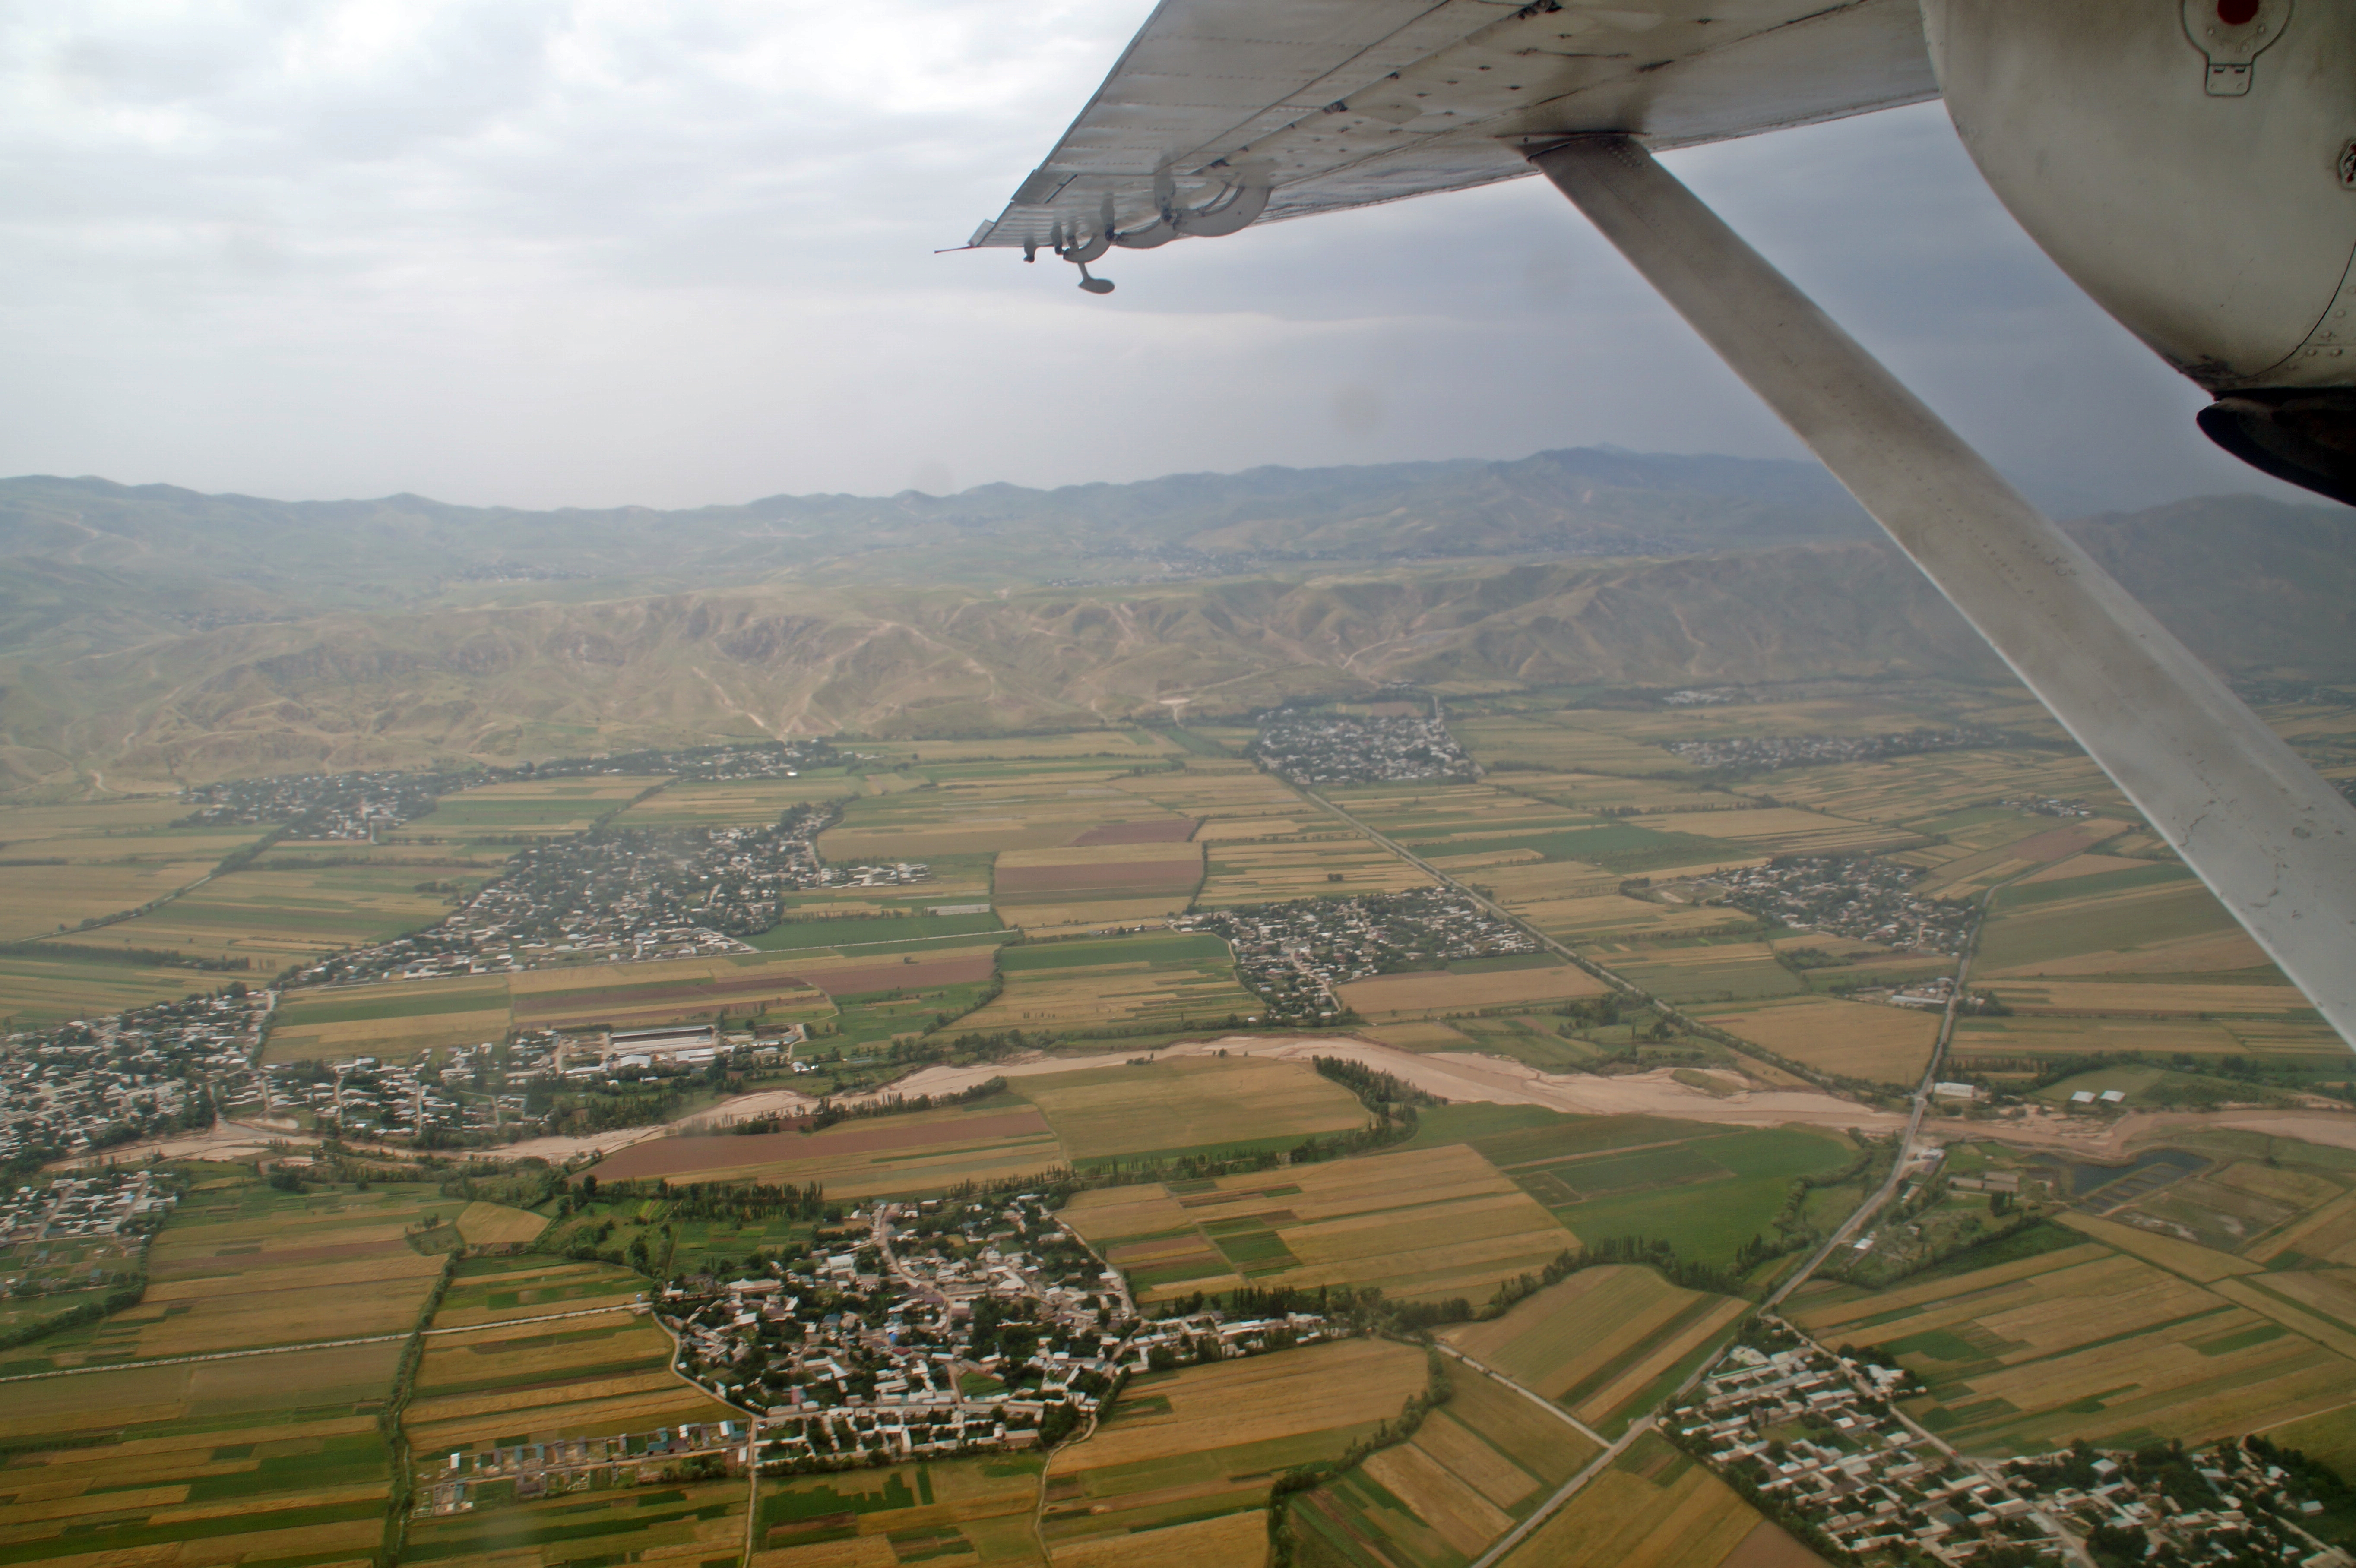 Landing in Dushanbe